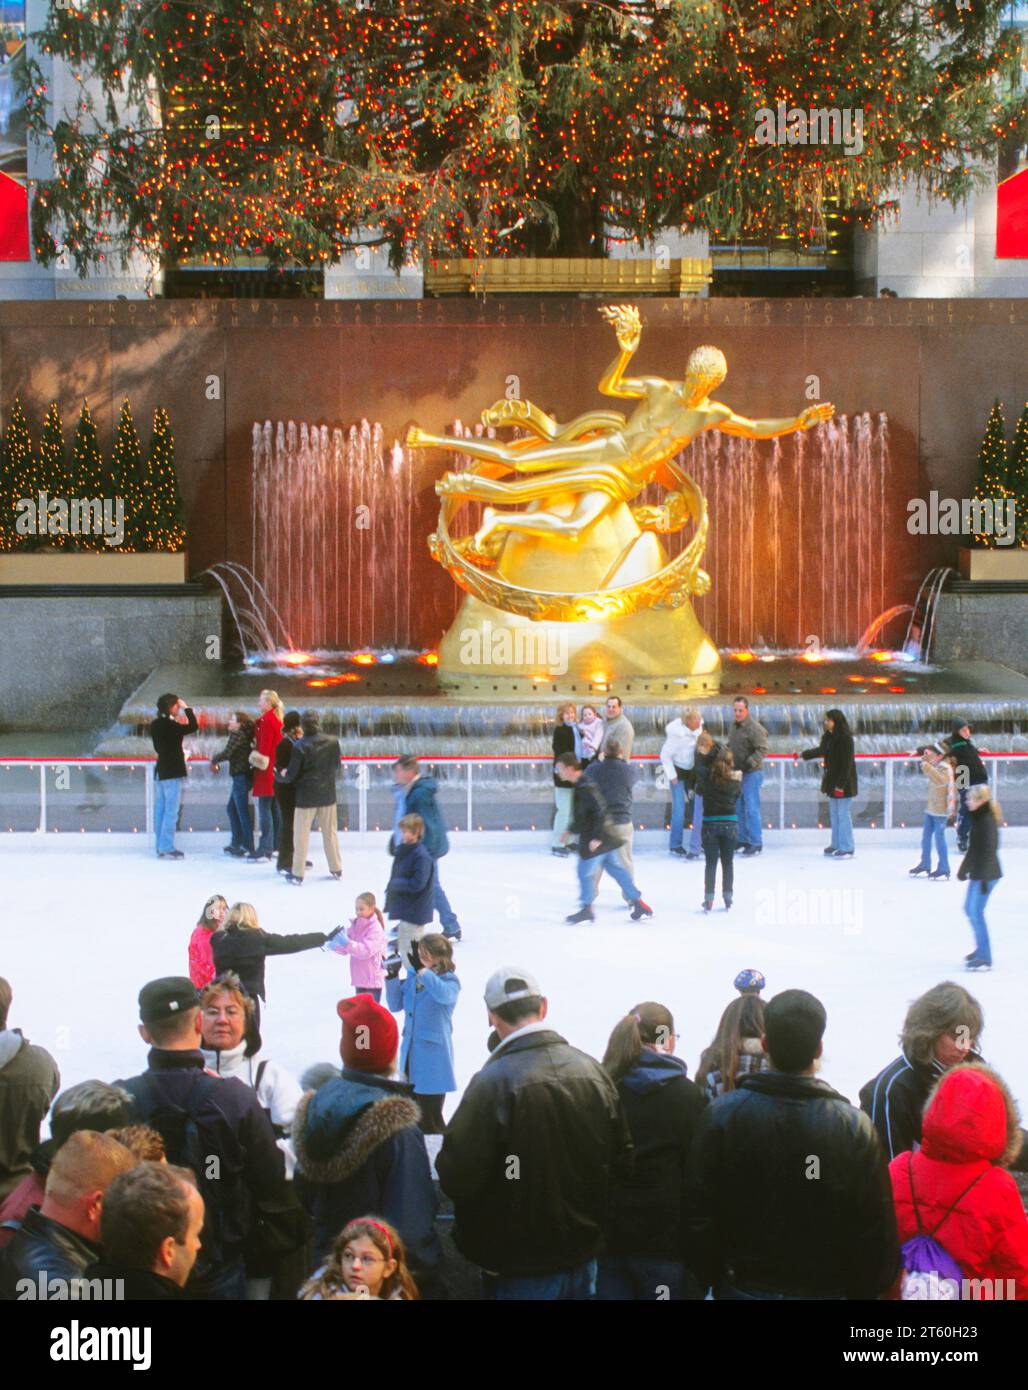 Patinoire Rockefeller Center plaza. Patineurs. Sapin de Noël et statue dorée de Prometheus. Les gens patinent à New York City USA Banque D'Images